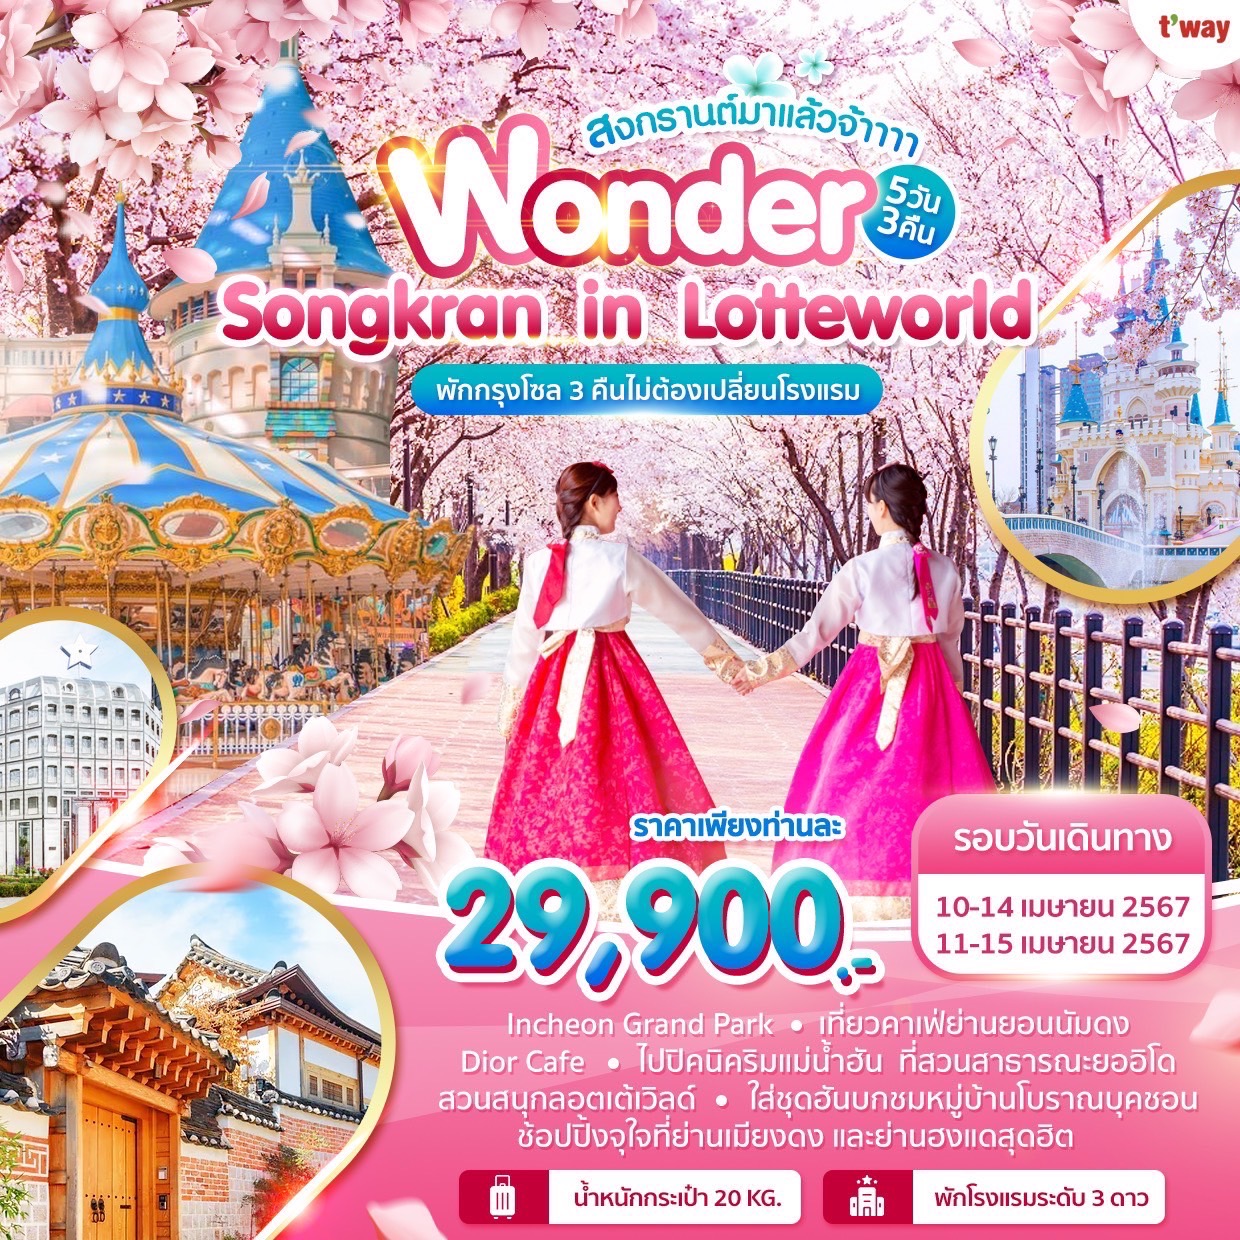 ทัวร์เกาหลี Wonder Songkran in Lotteworld 5วัน 3คืน